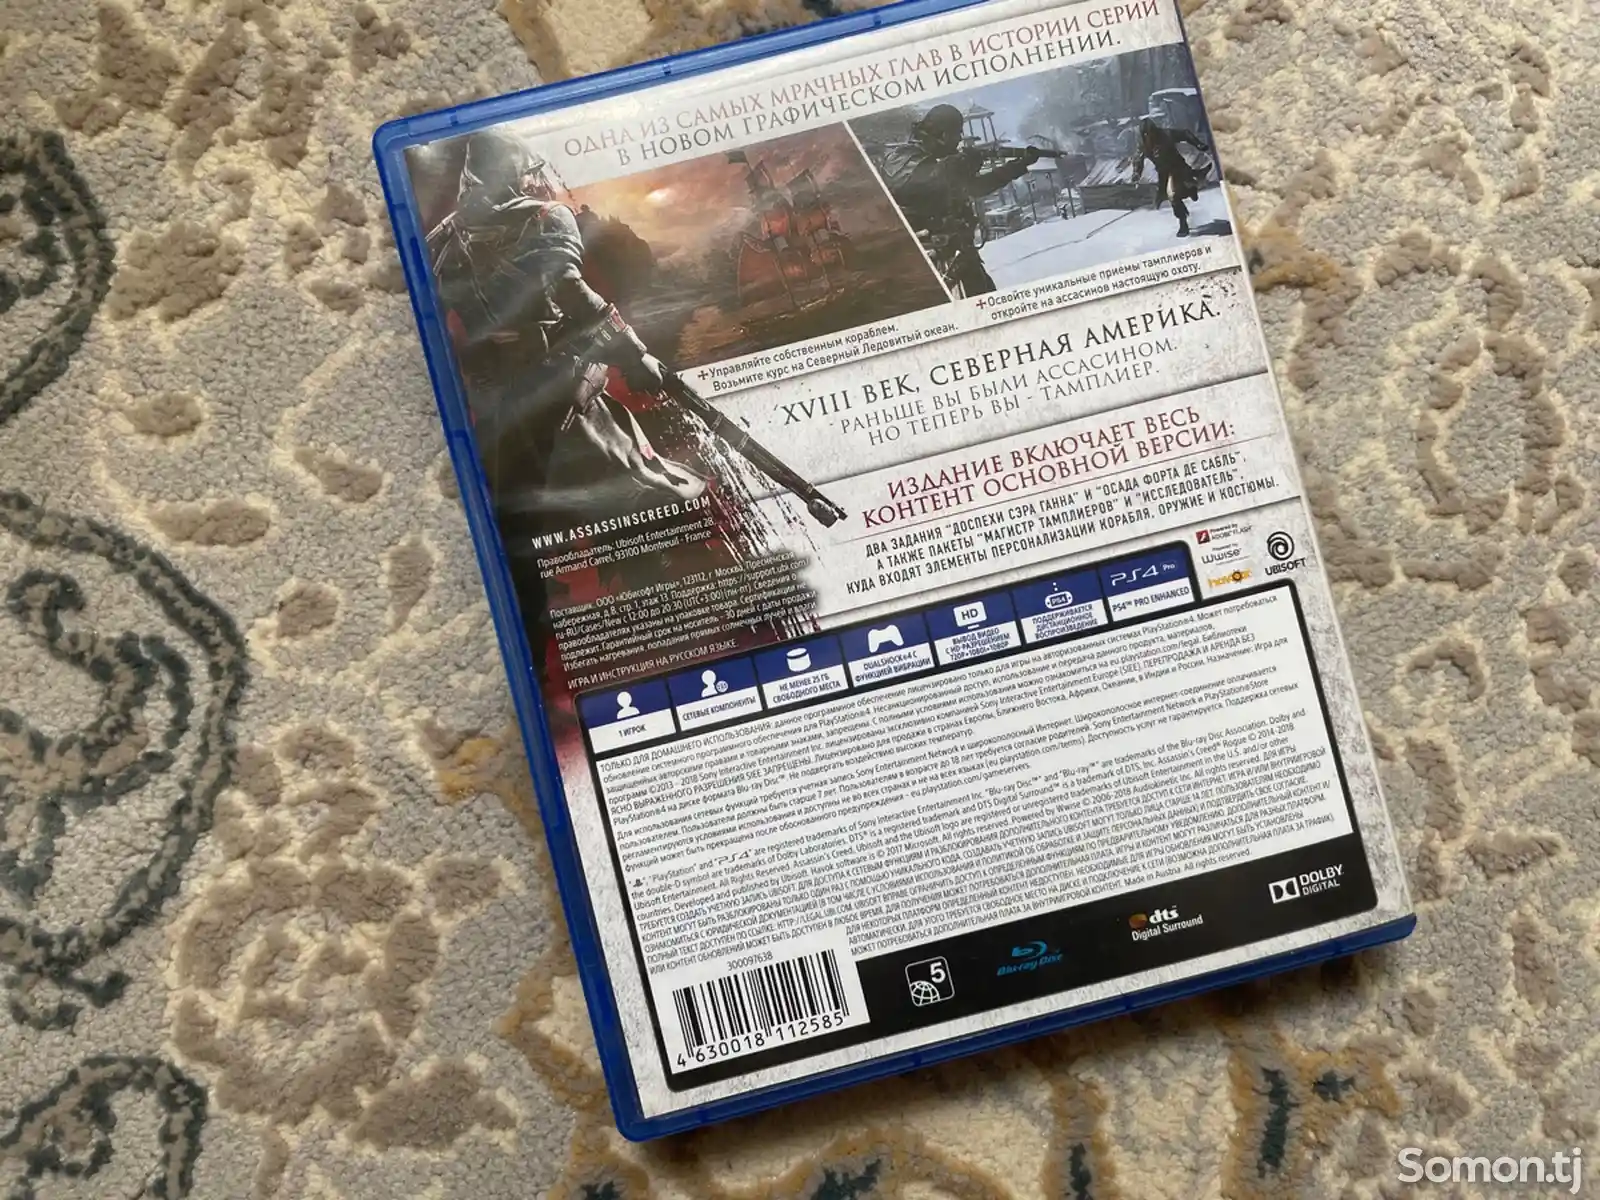 Игра Assassin's Creed - Rogue Изгой Remastered русская версия-3